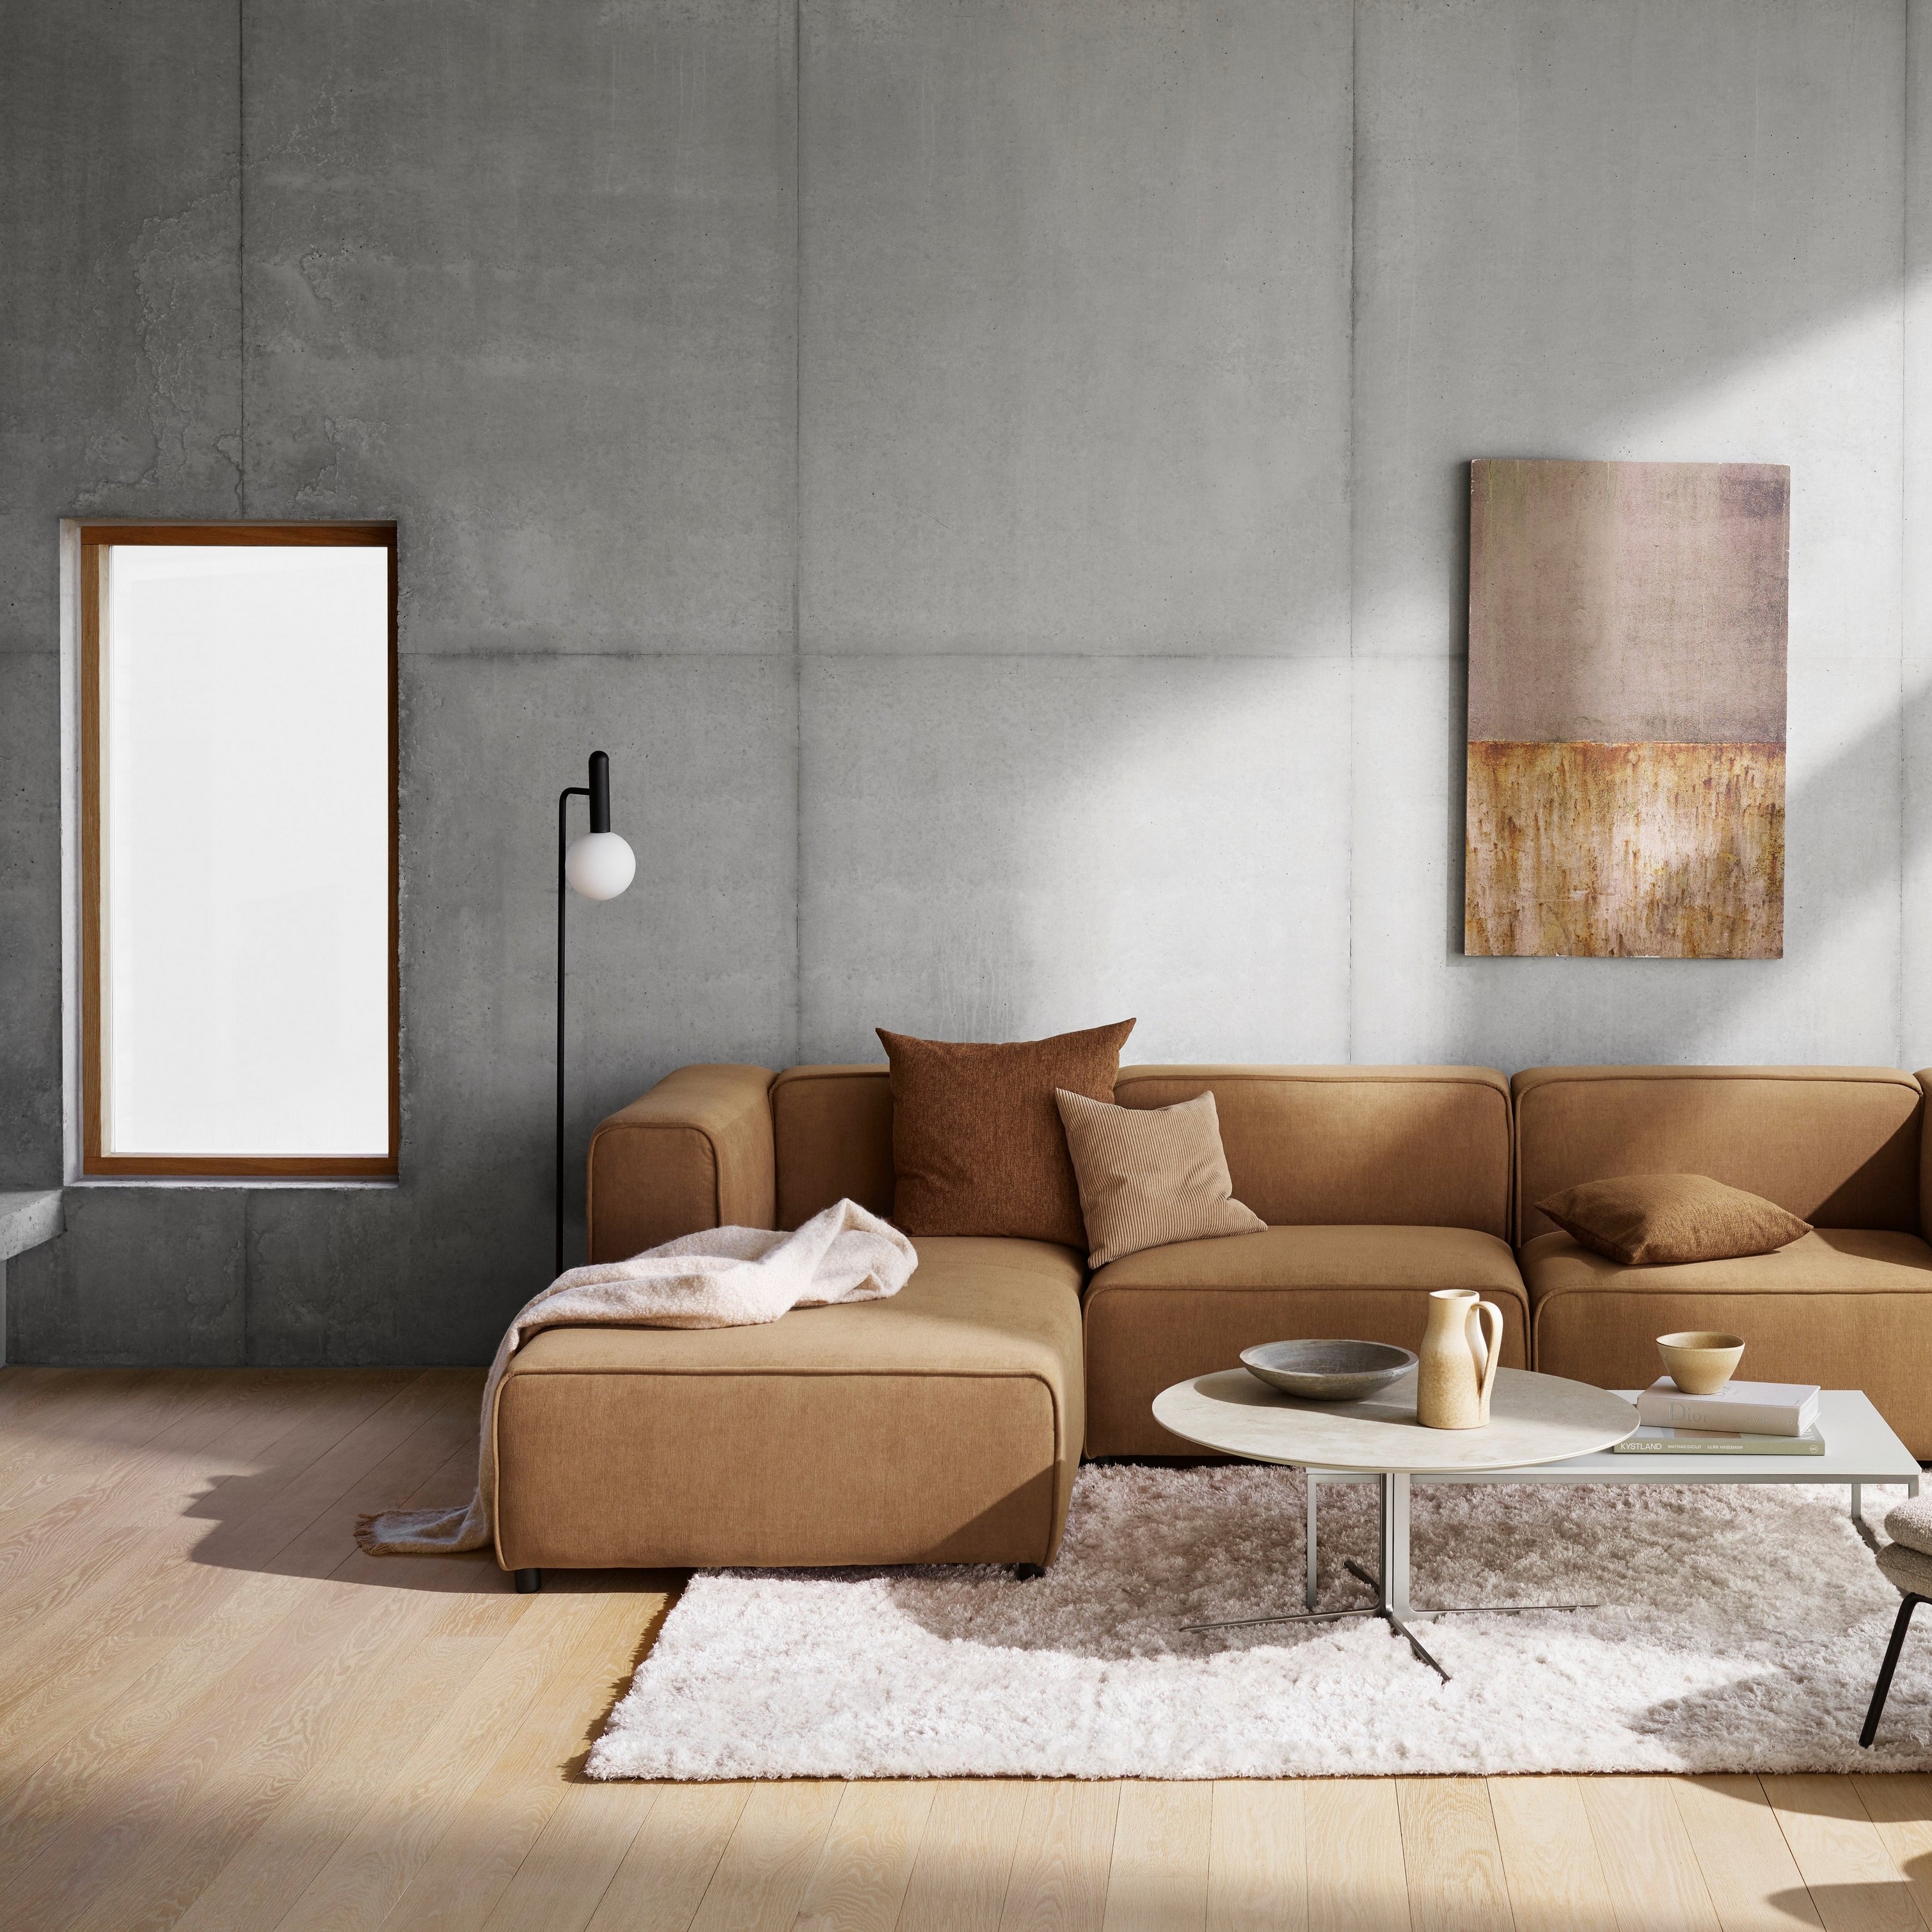 Nowoczesny pokój dzienny z beżową sofą modułową, abstrakcyjną grafiką ścienną i pluszowym dywanem ułożonym na drewnianej podłodze.